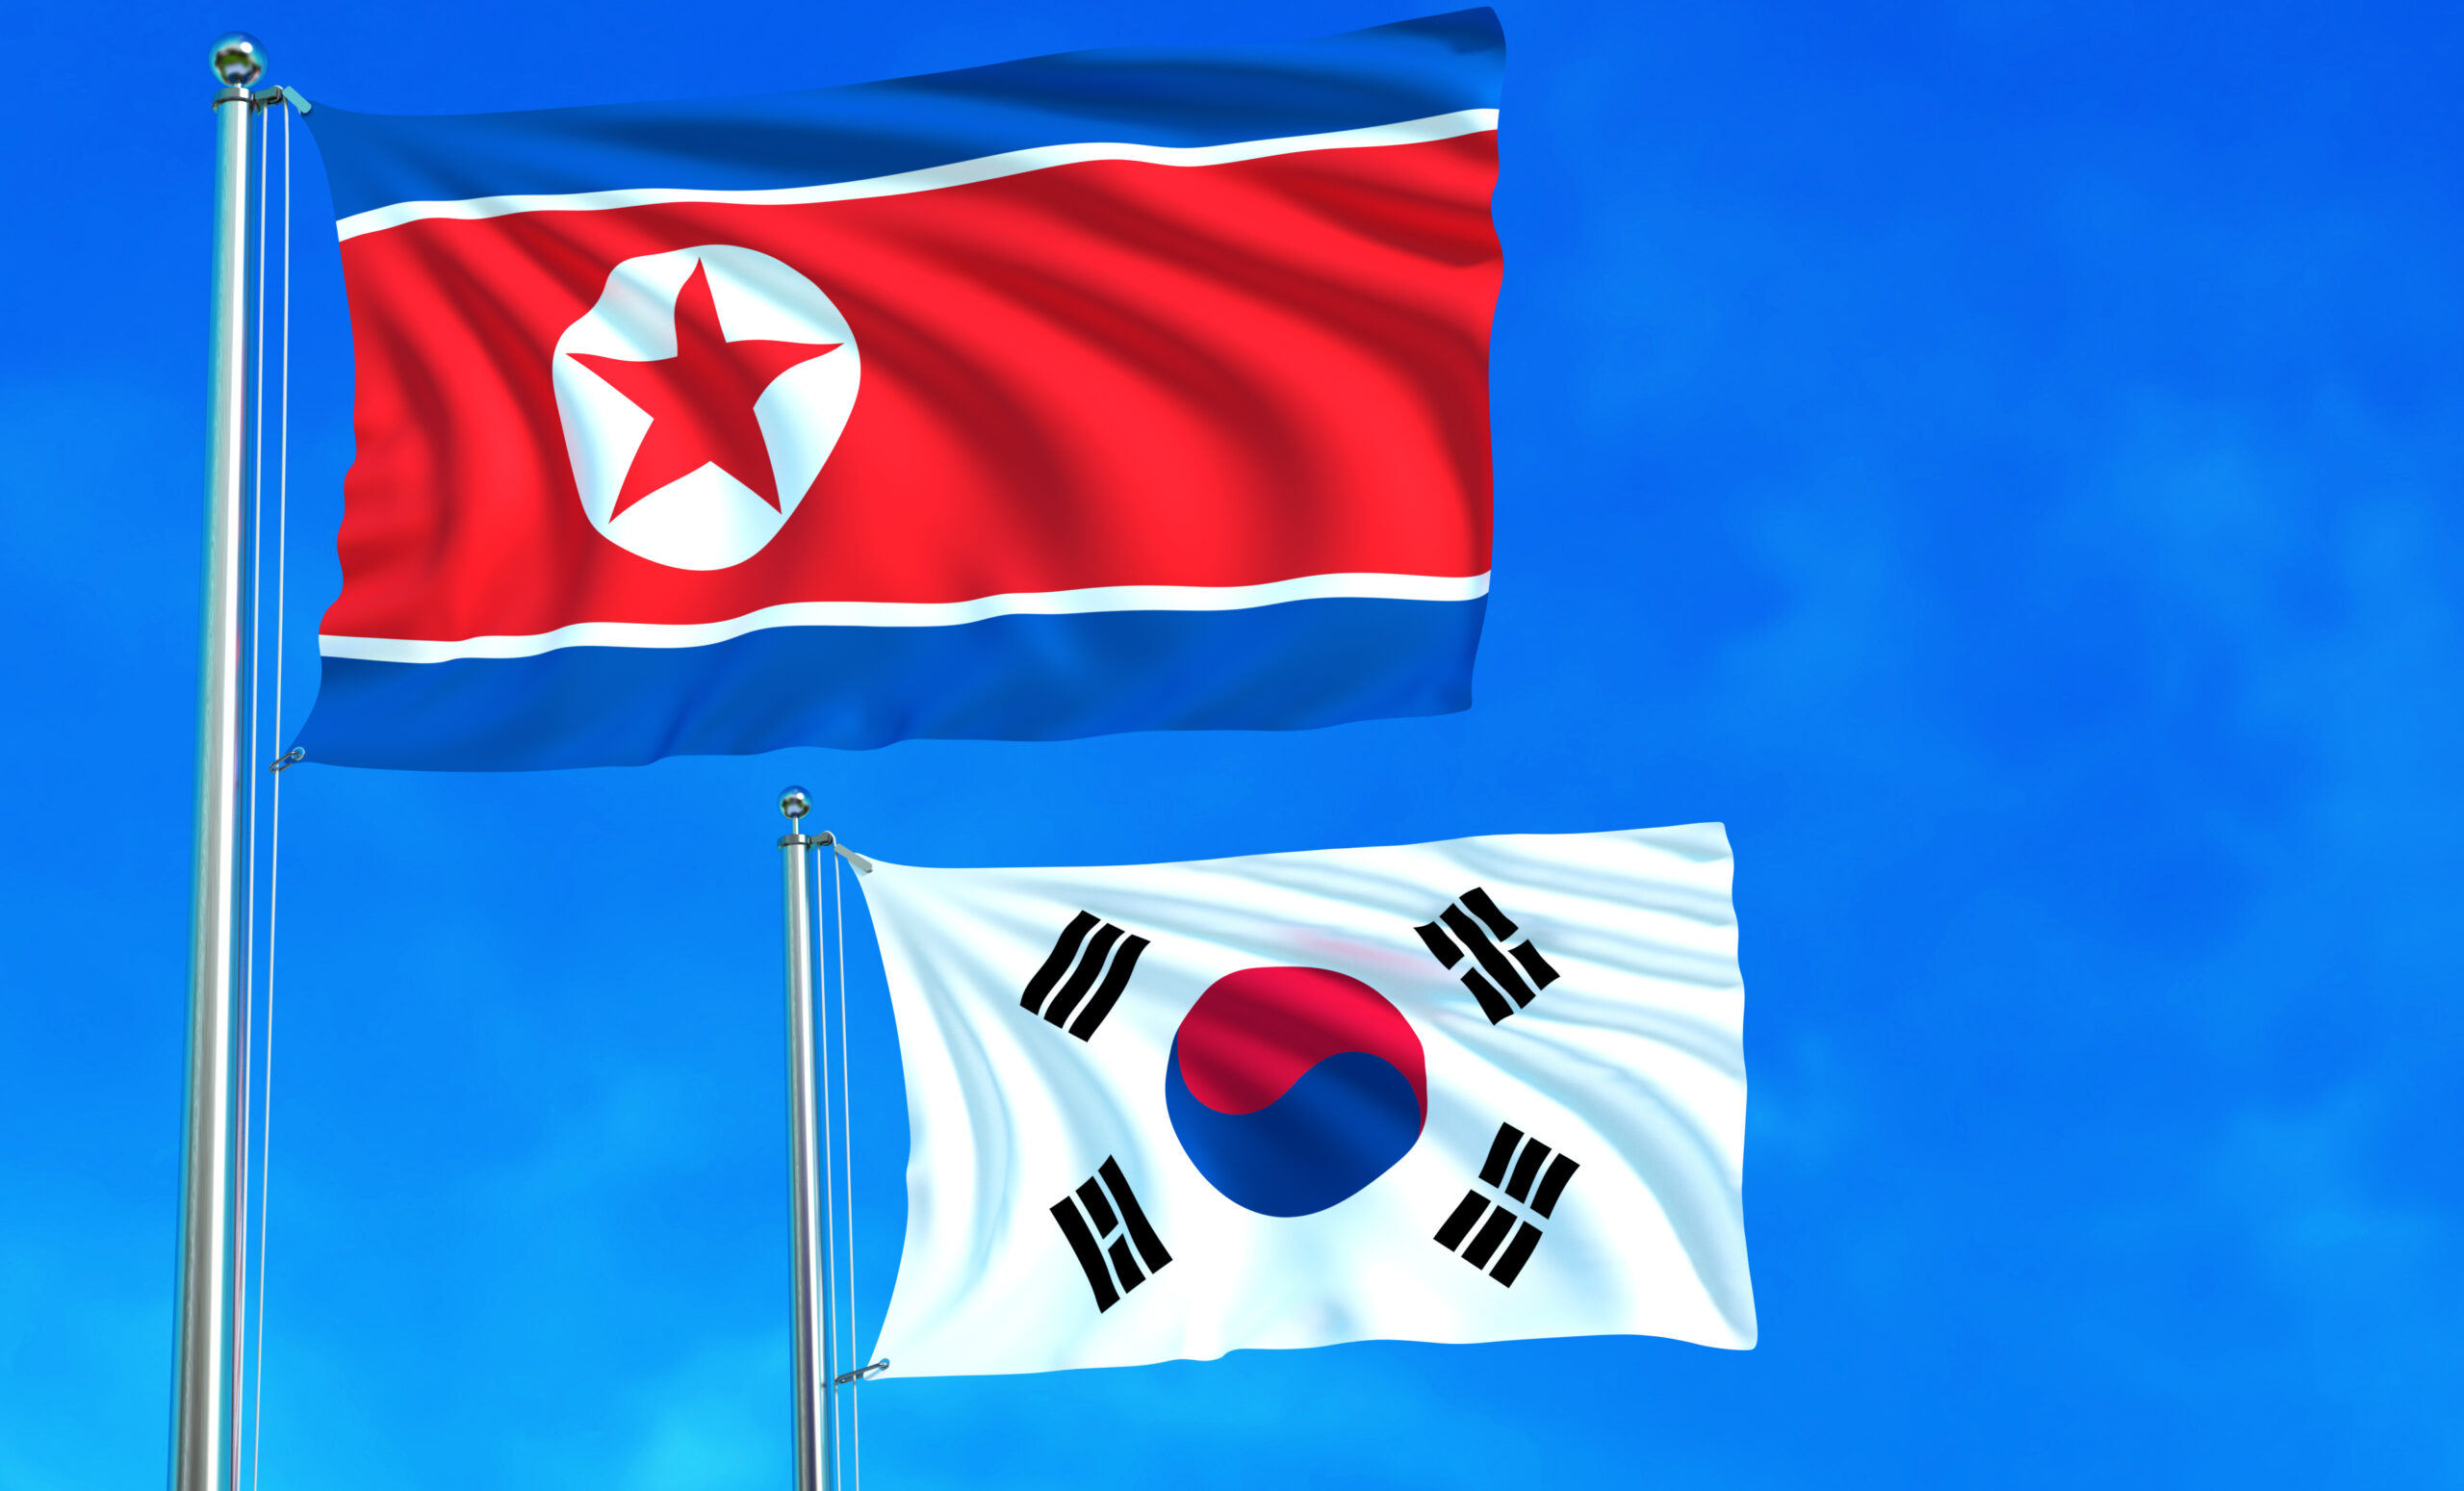 La dos Coreas decidieron reiniciar los intercambios de comunicación a través de línea telefónica. Foto: Freepik